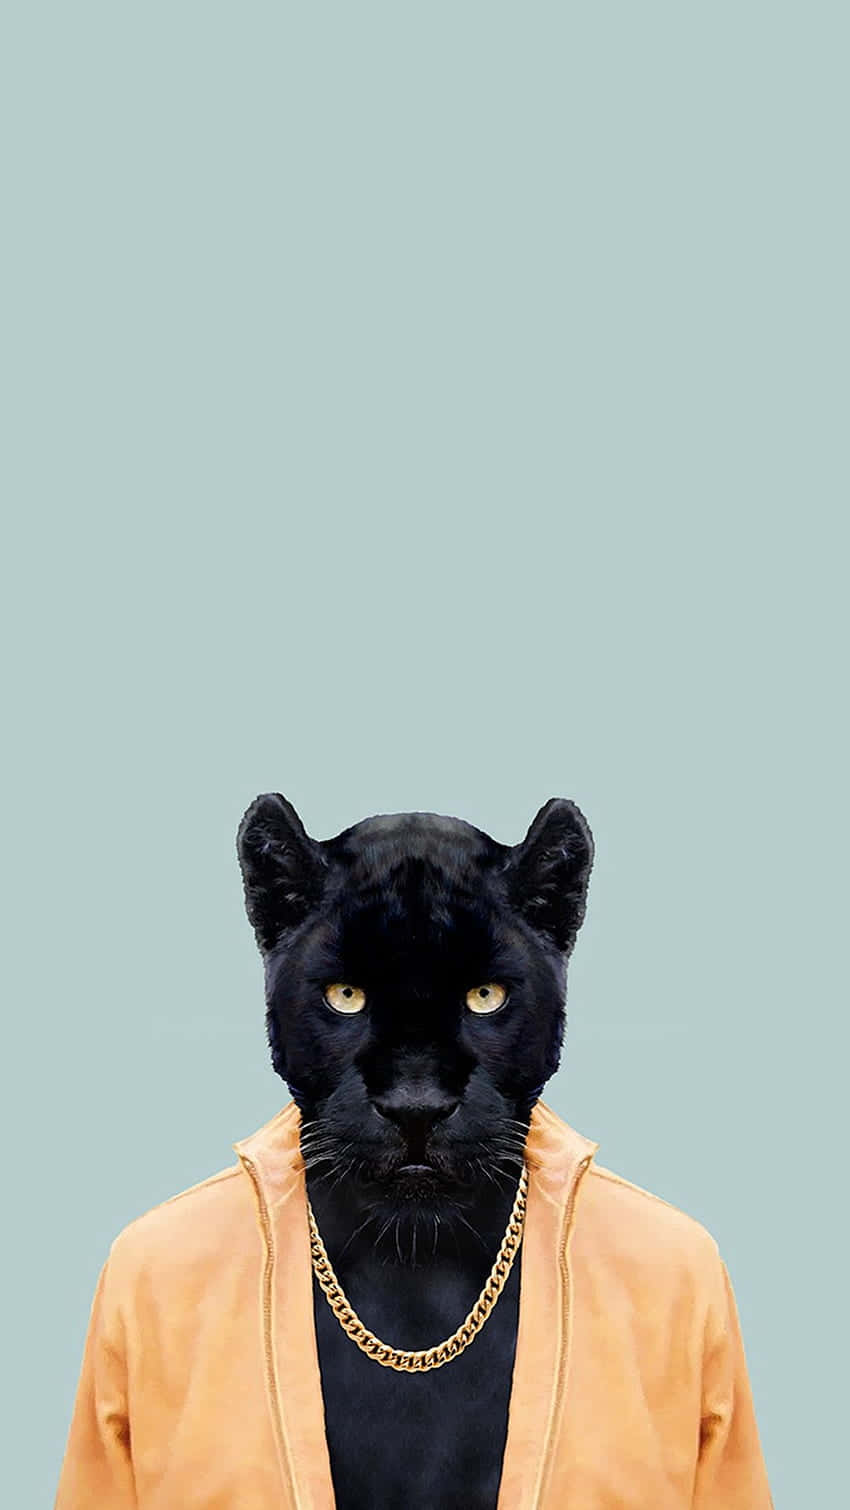 Free Cool Black Panther Animal Wallpaper Downloads, [100+] Cool Black  Panther Animal Wallpapers for FREE 